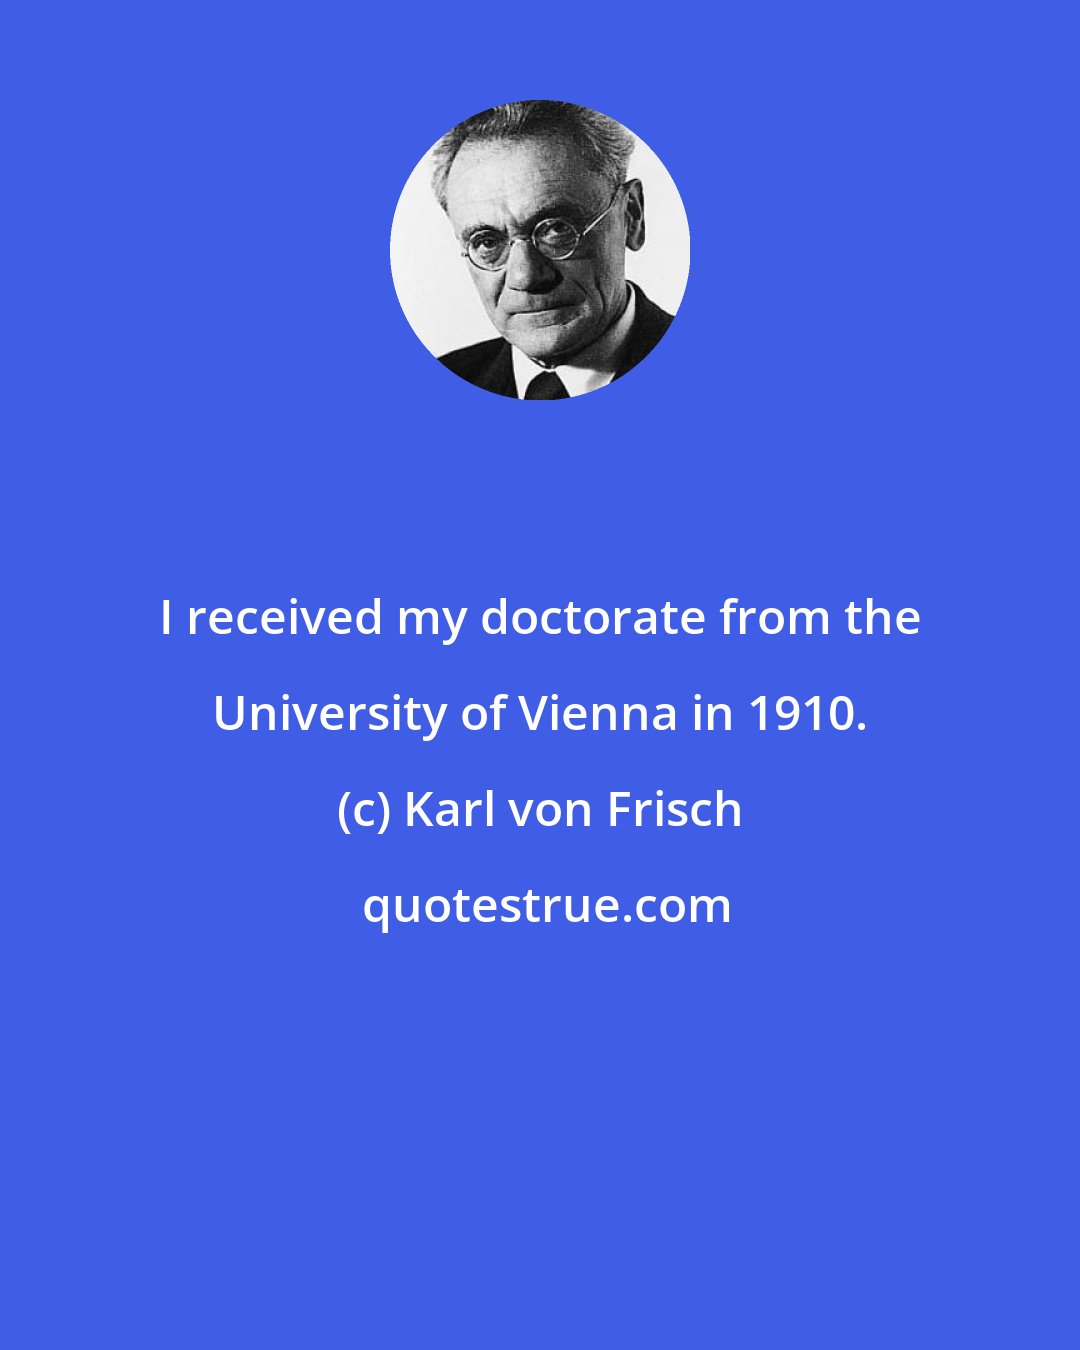 Karl von Frisch: I received my doctorate from the University of Vienna in 1910.